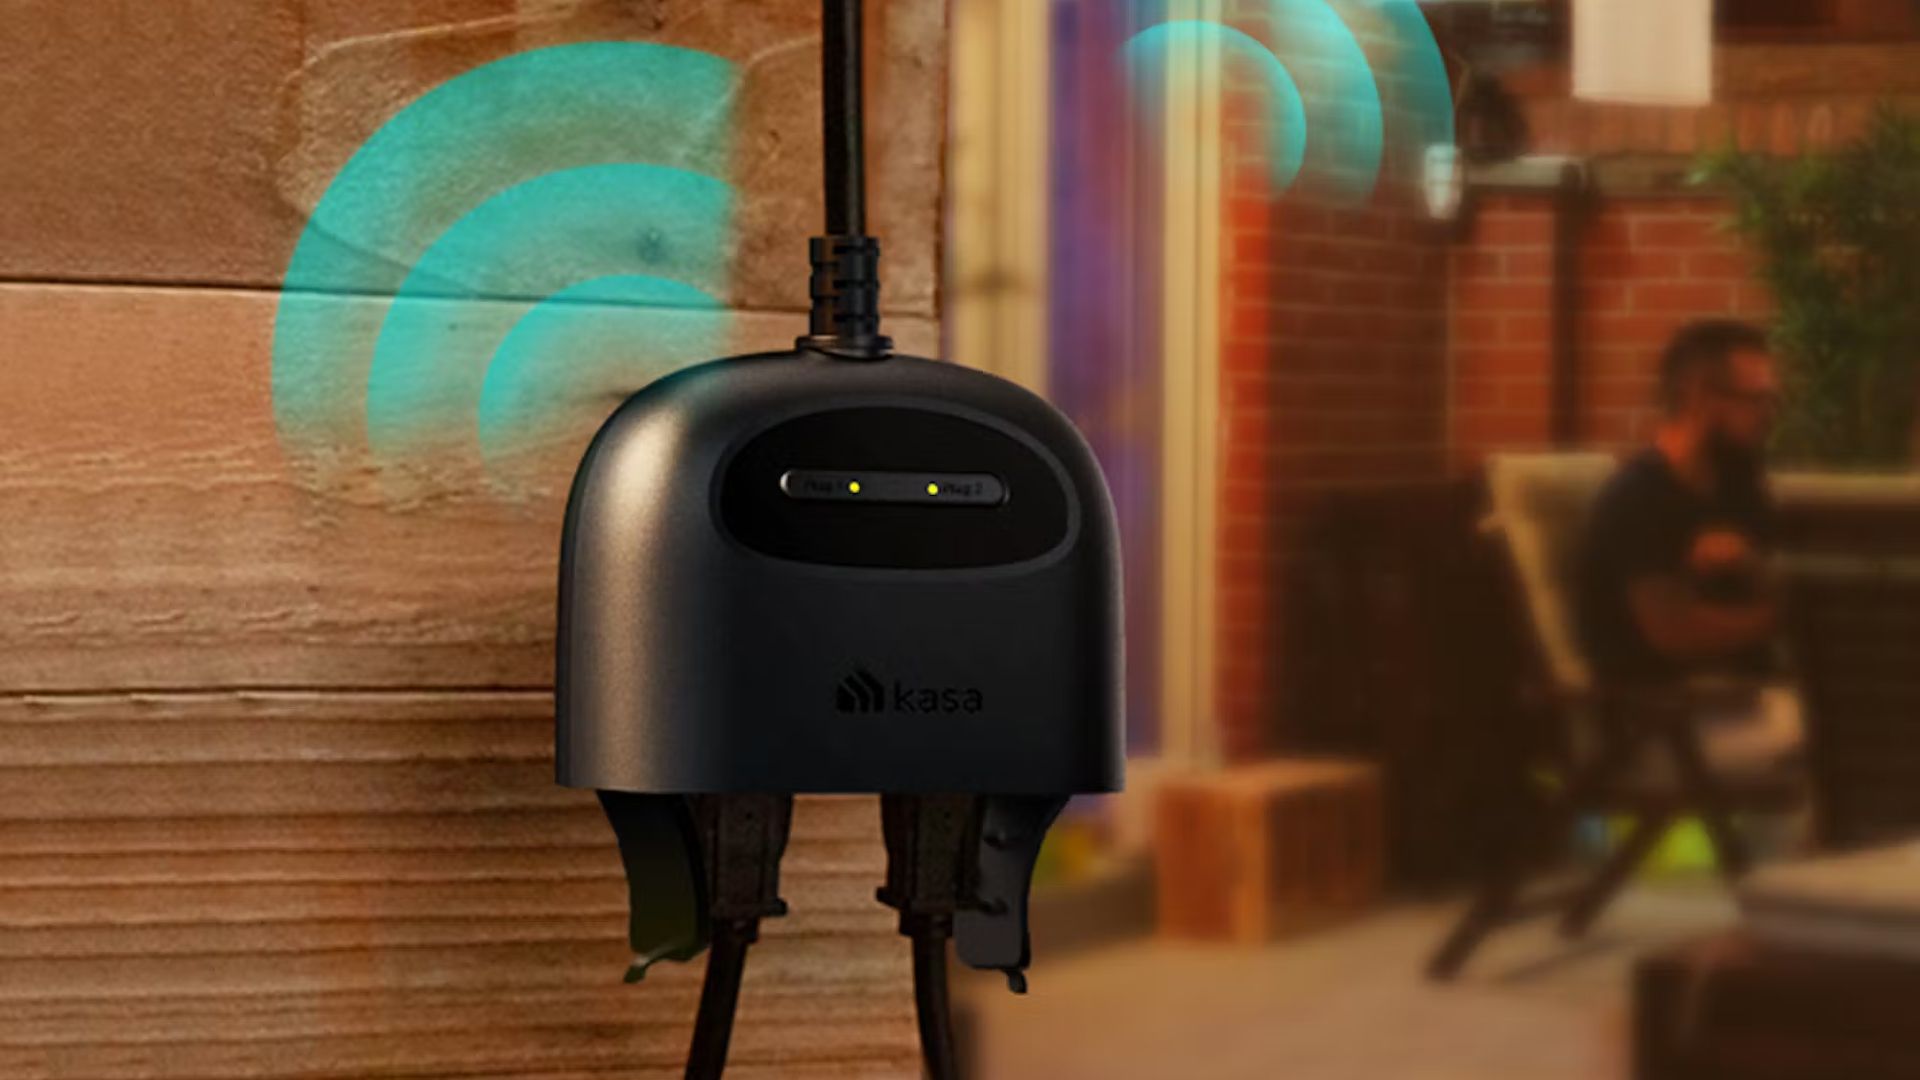 kasa-ep40-outdoor-smart-plug-lifestyle